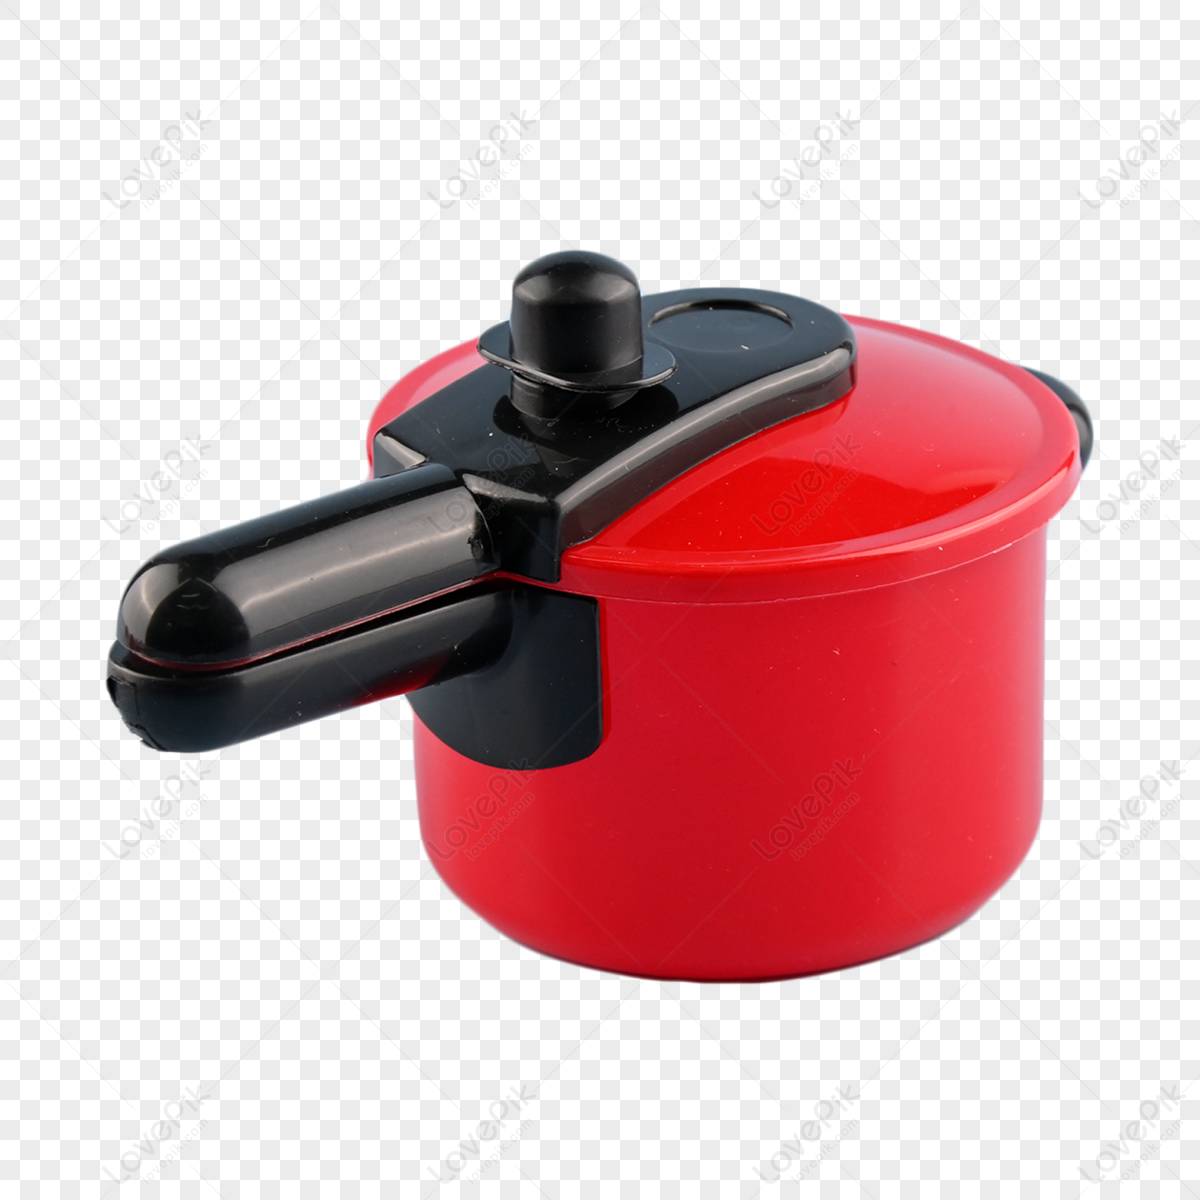 Pressure cooker vector design 25780489 Vector Art at Vecteezy